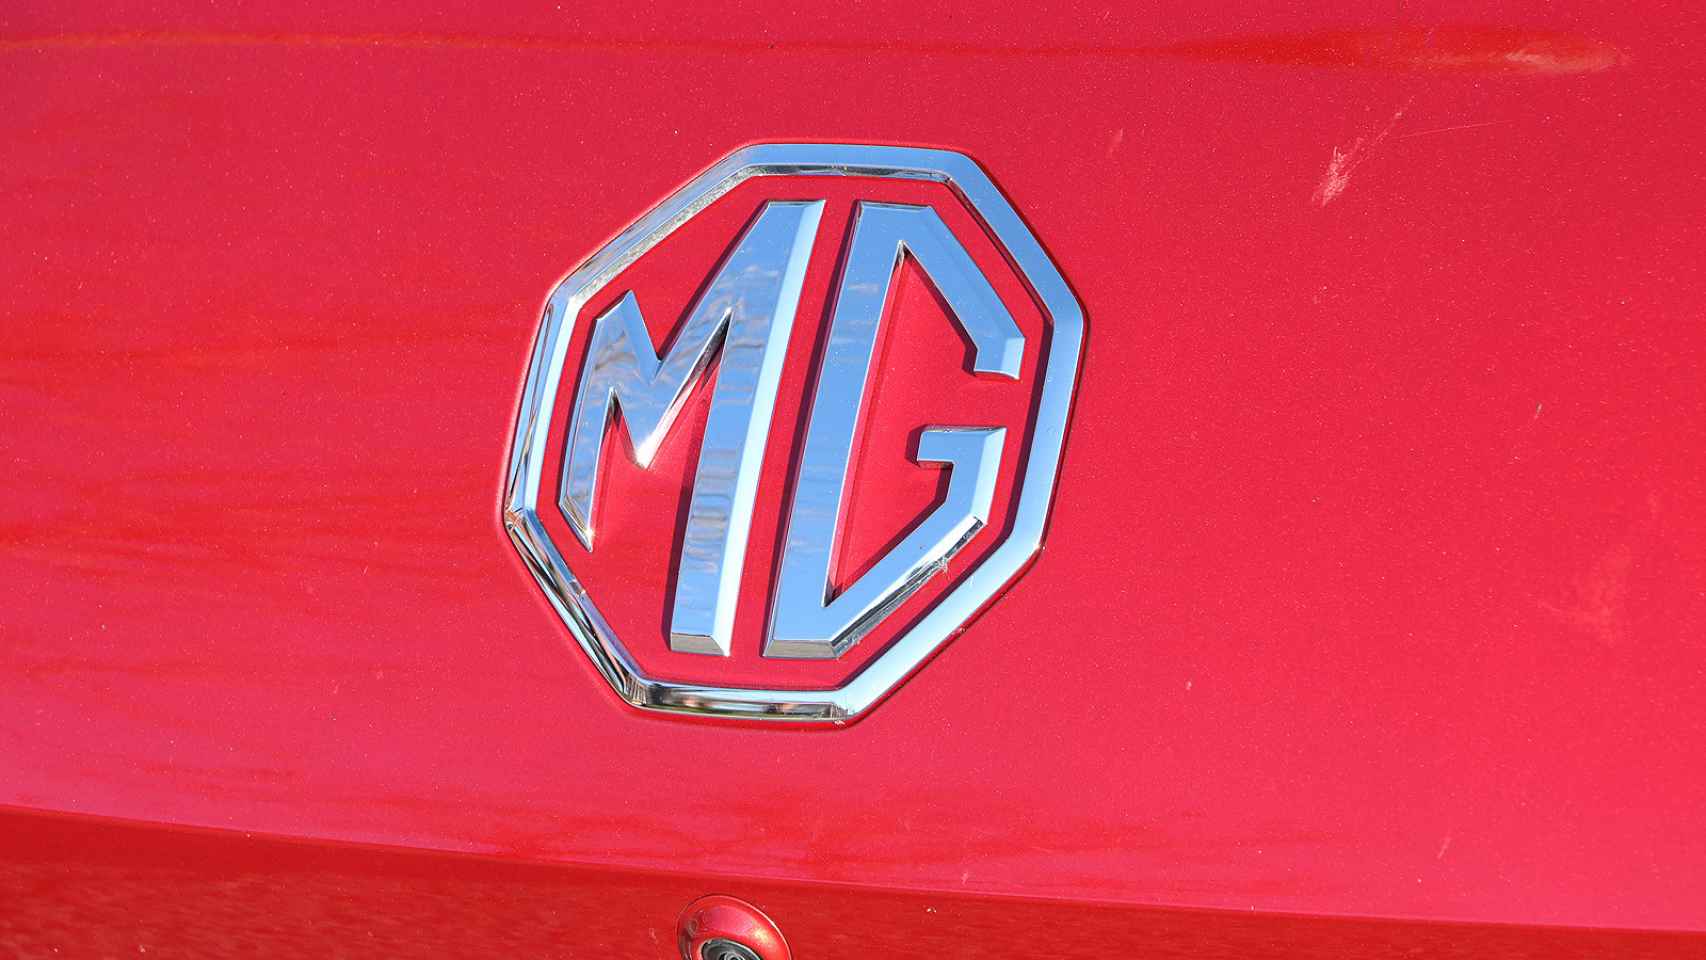 Emblema de MG.